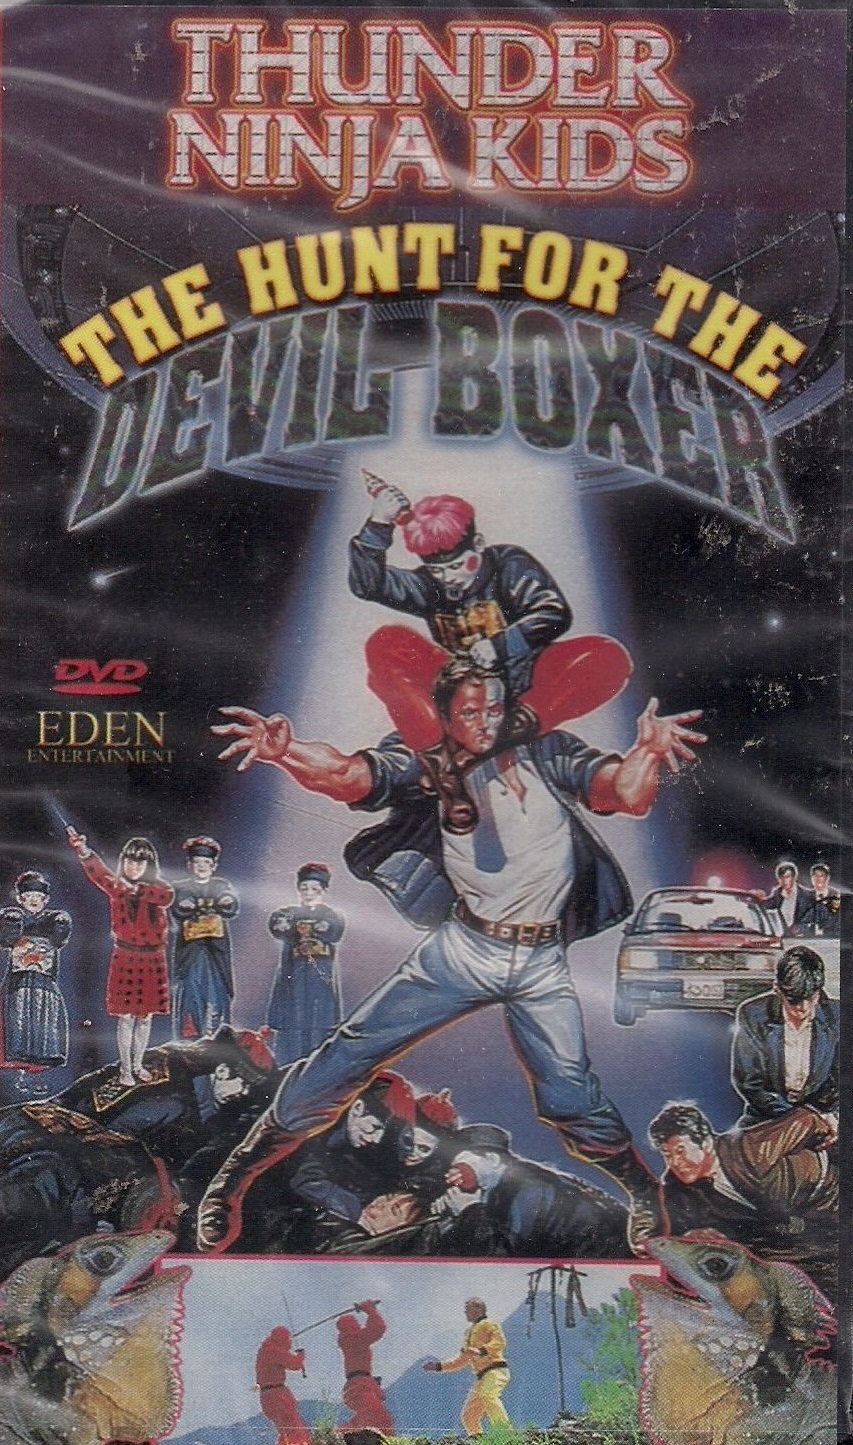 Thunder Ninja Kids: The Hunt for the Devil Boxer (1991) Screenshot 2